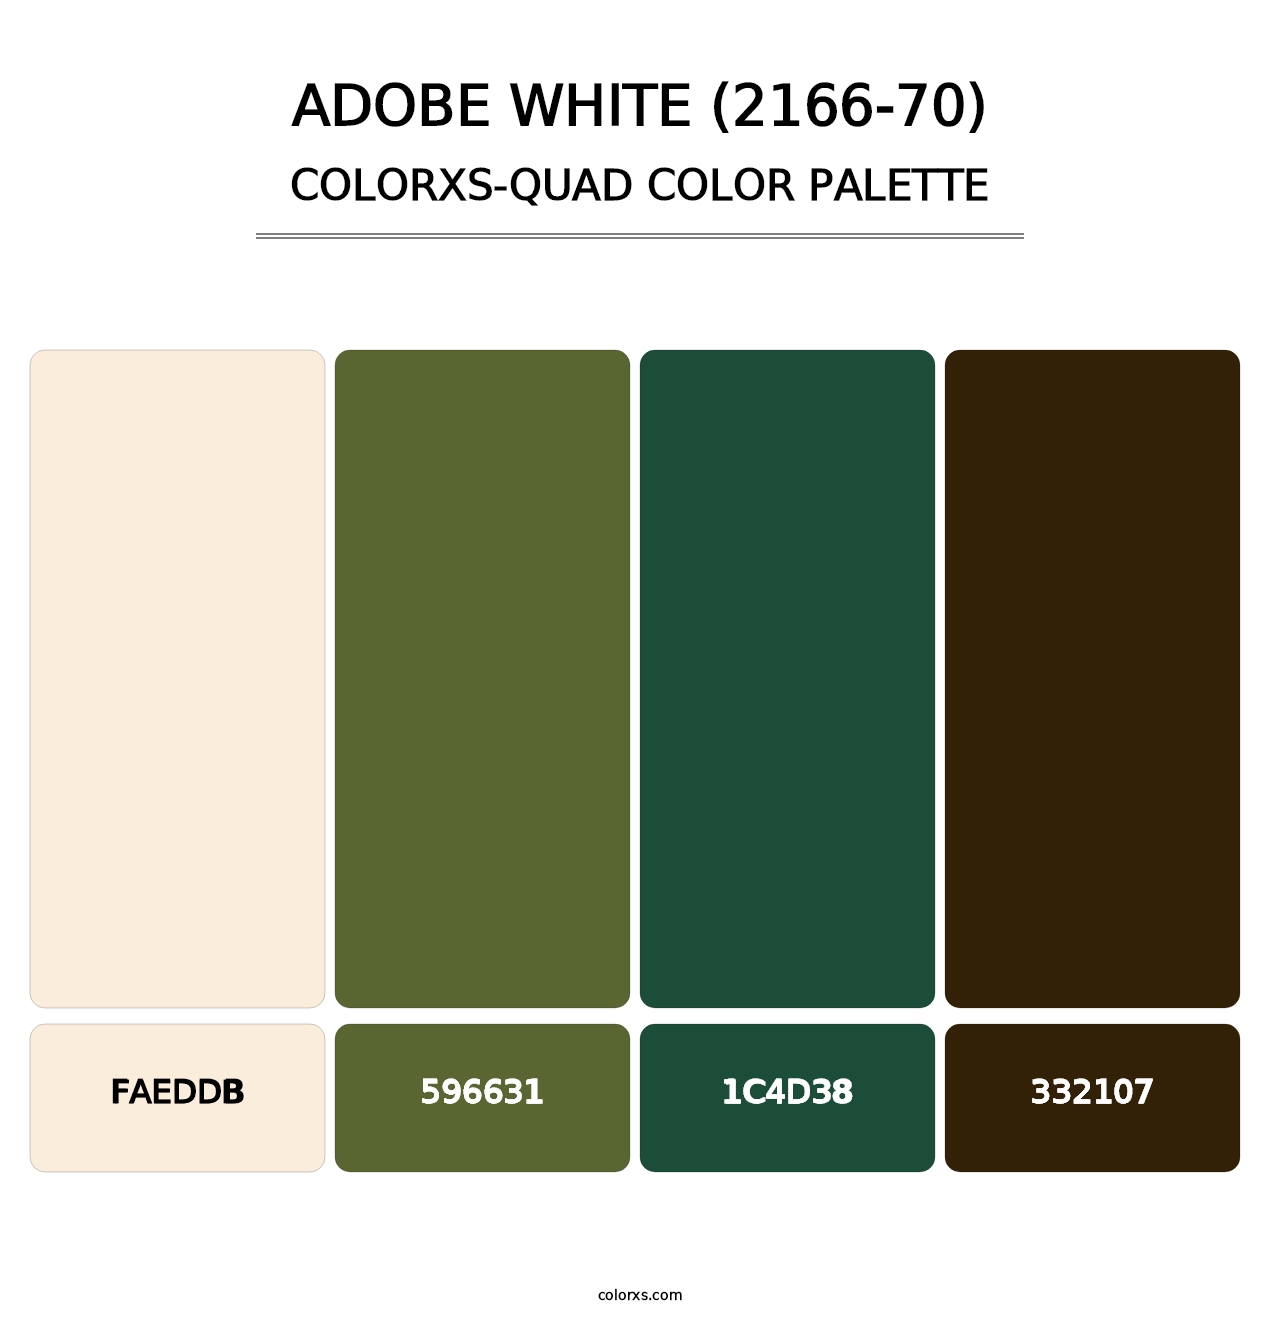 Adobe White (2166-70) - Colorxs Quad Palette